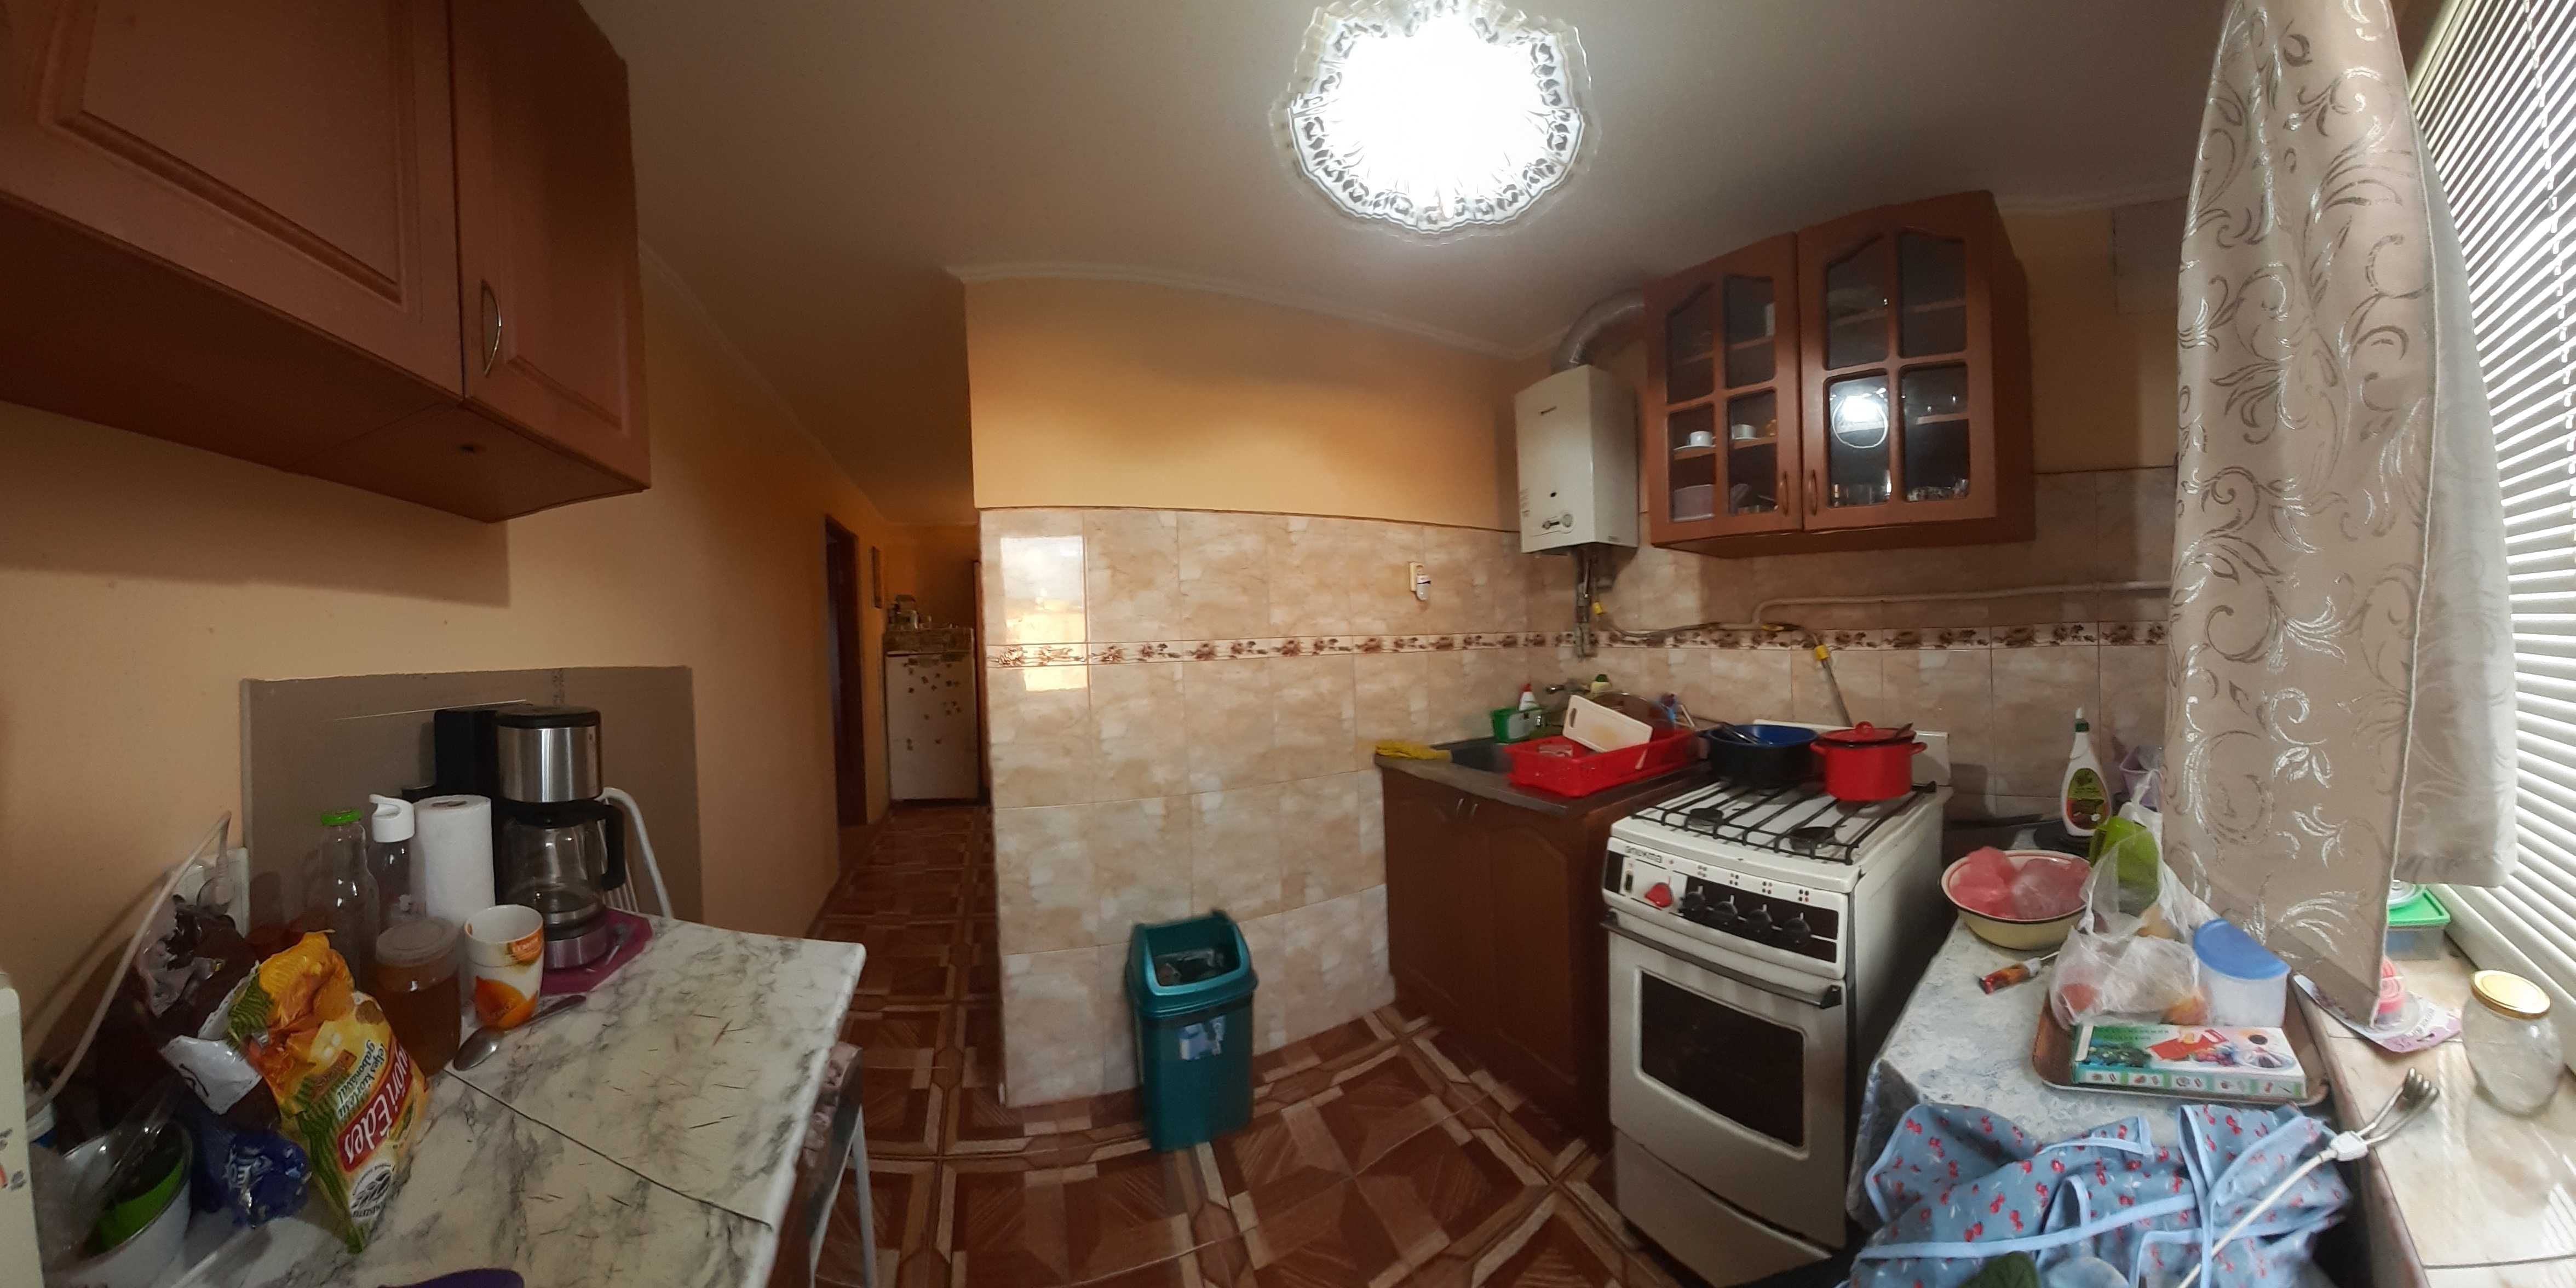 Продам 2-х кімнатну квартиру в жилому стані з меблями у Берегові